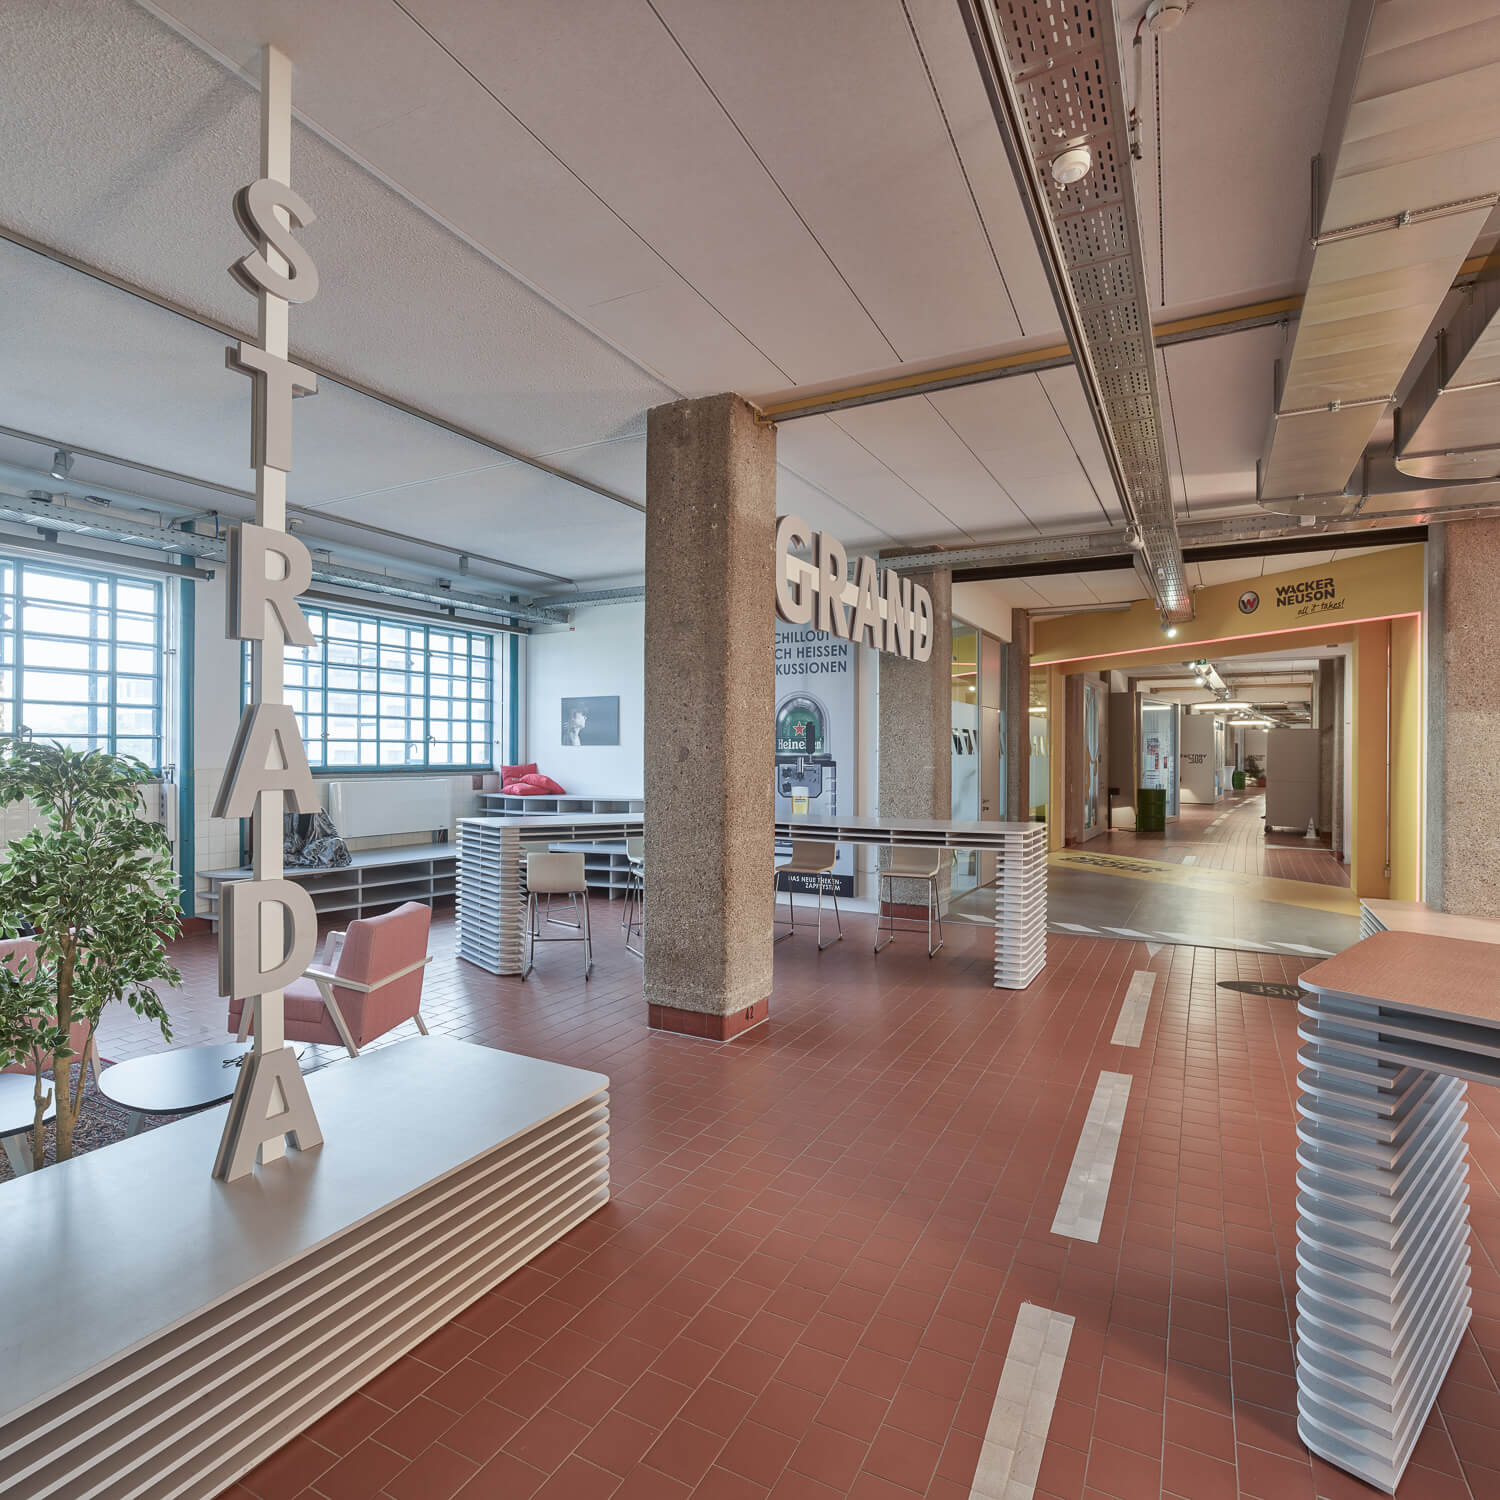 moderný interiér budovy - oddychová zóna pre zamestnancov